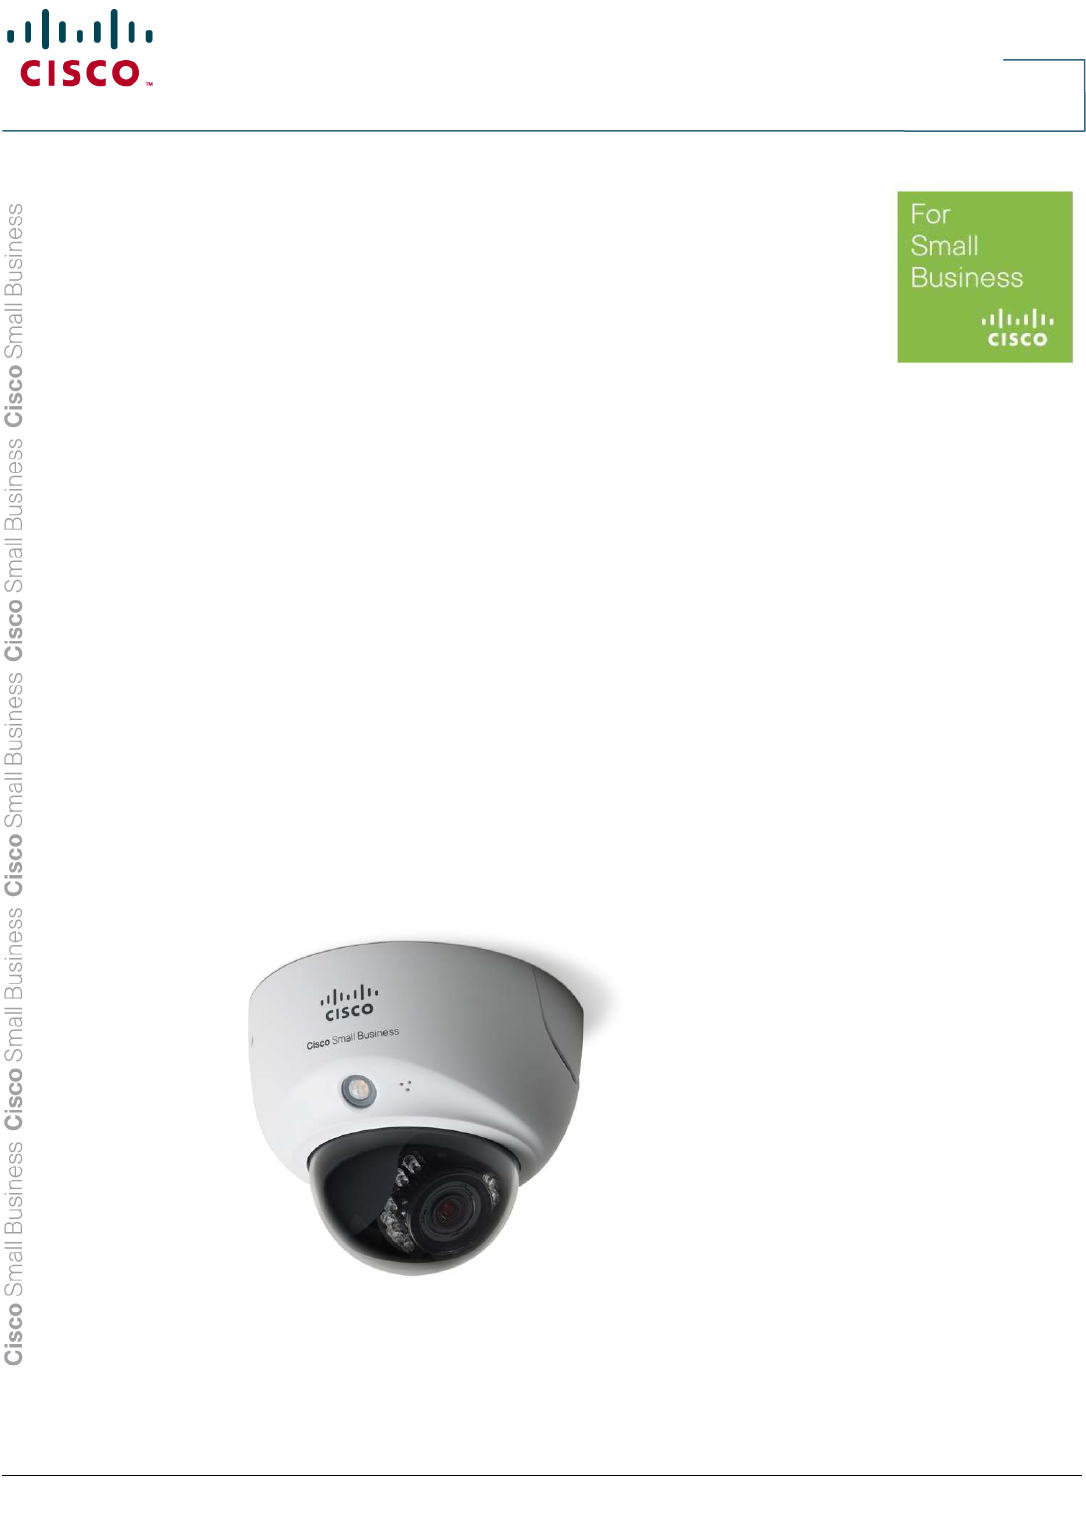 cisco security camera systems